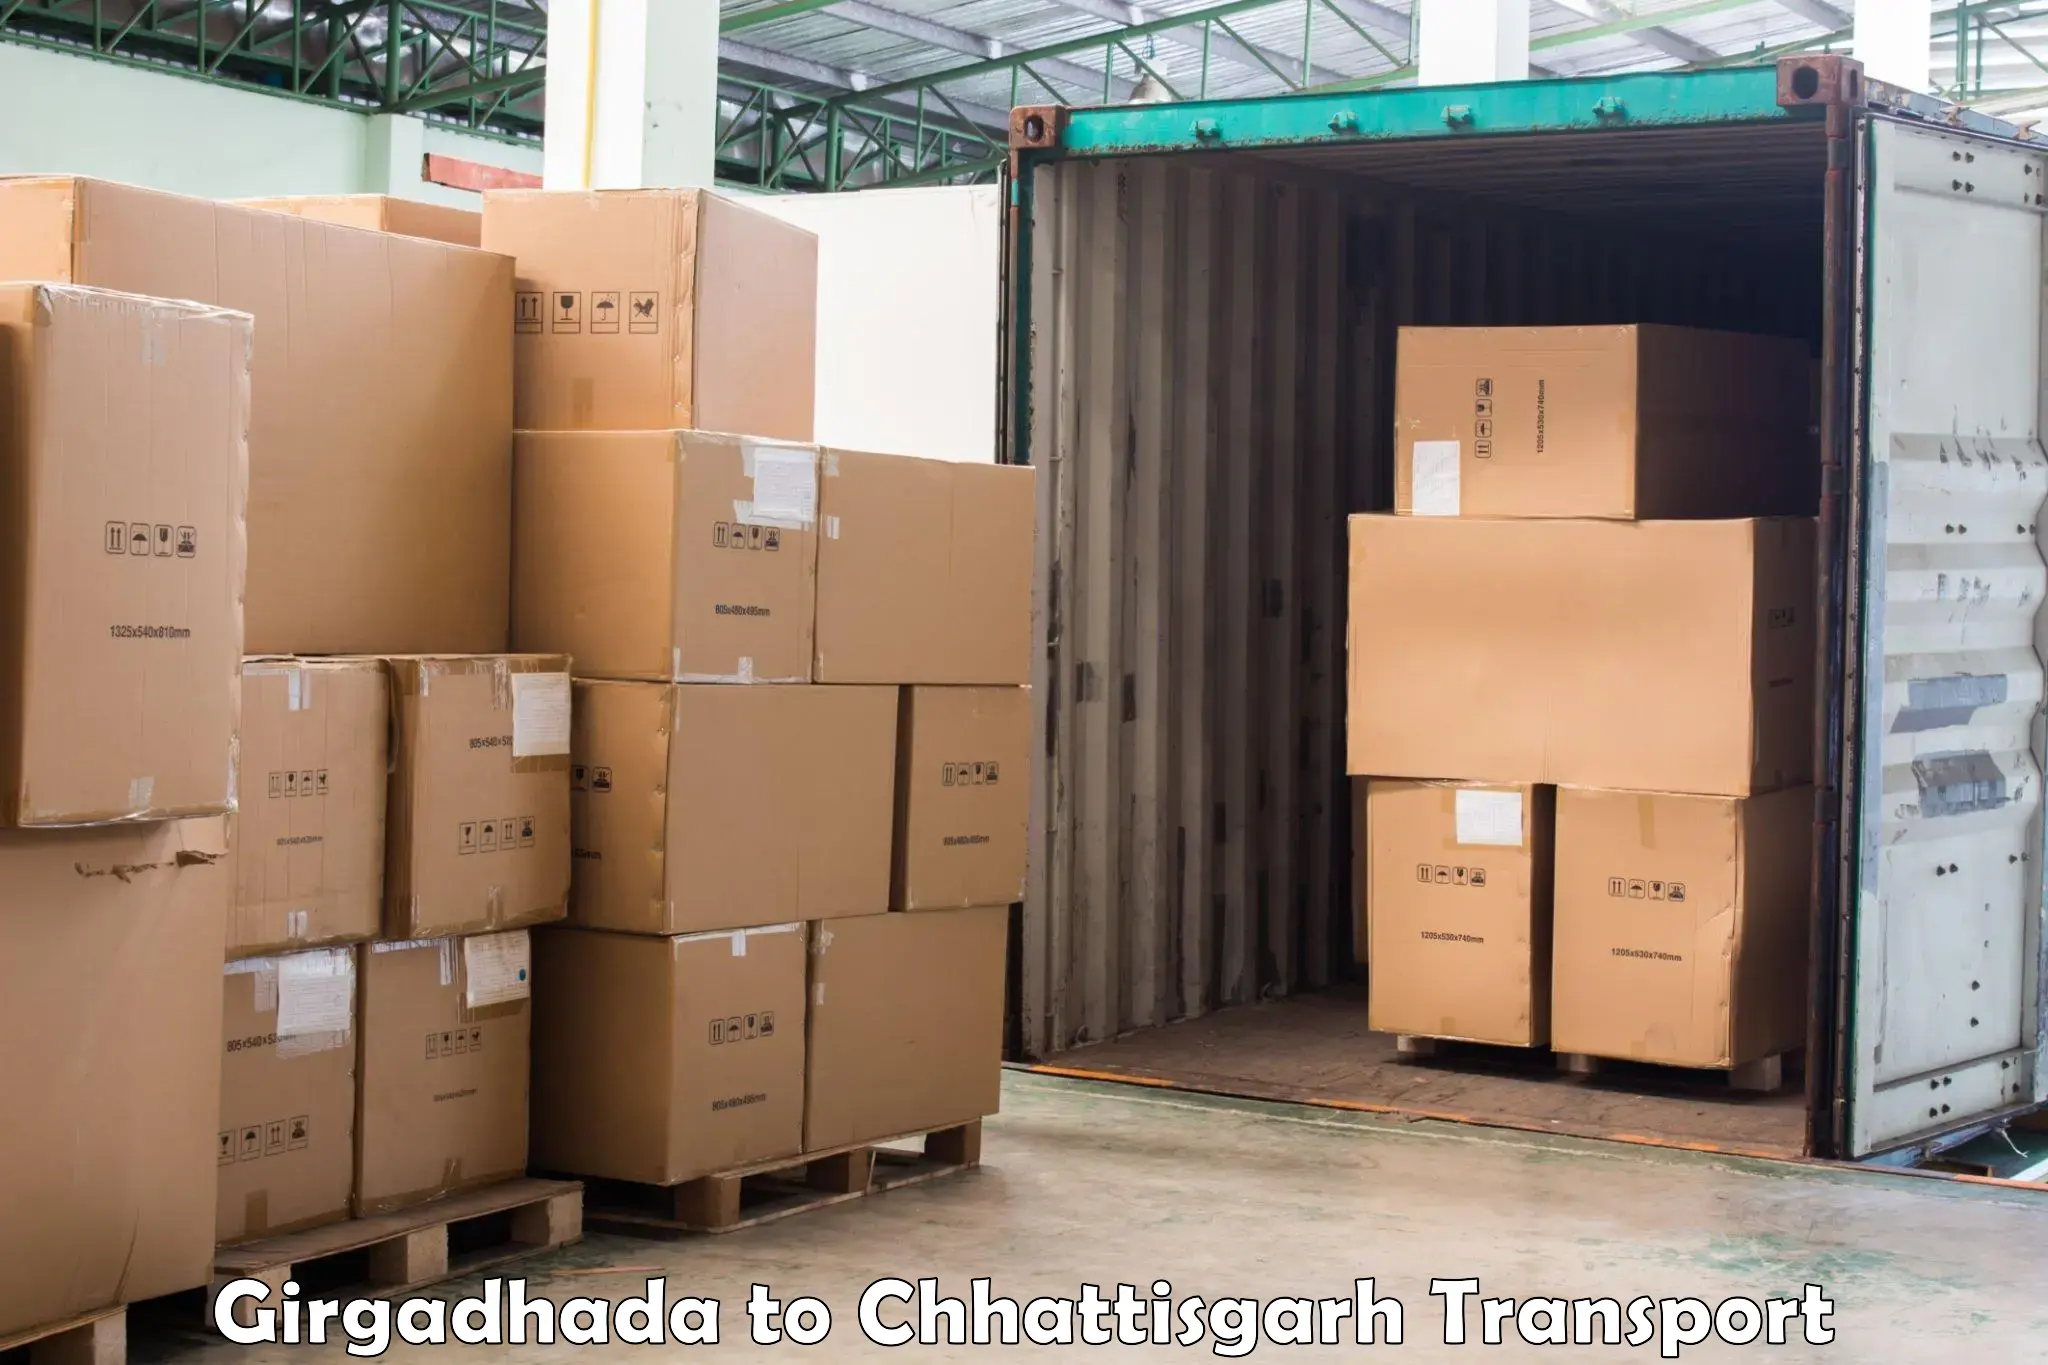 Air cargo transport services Girgadhada to Jaijaipur